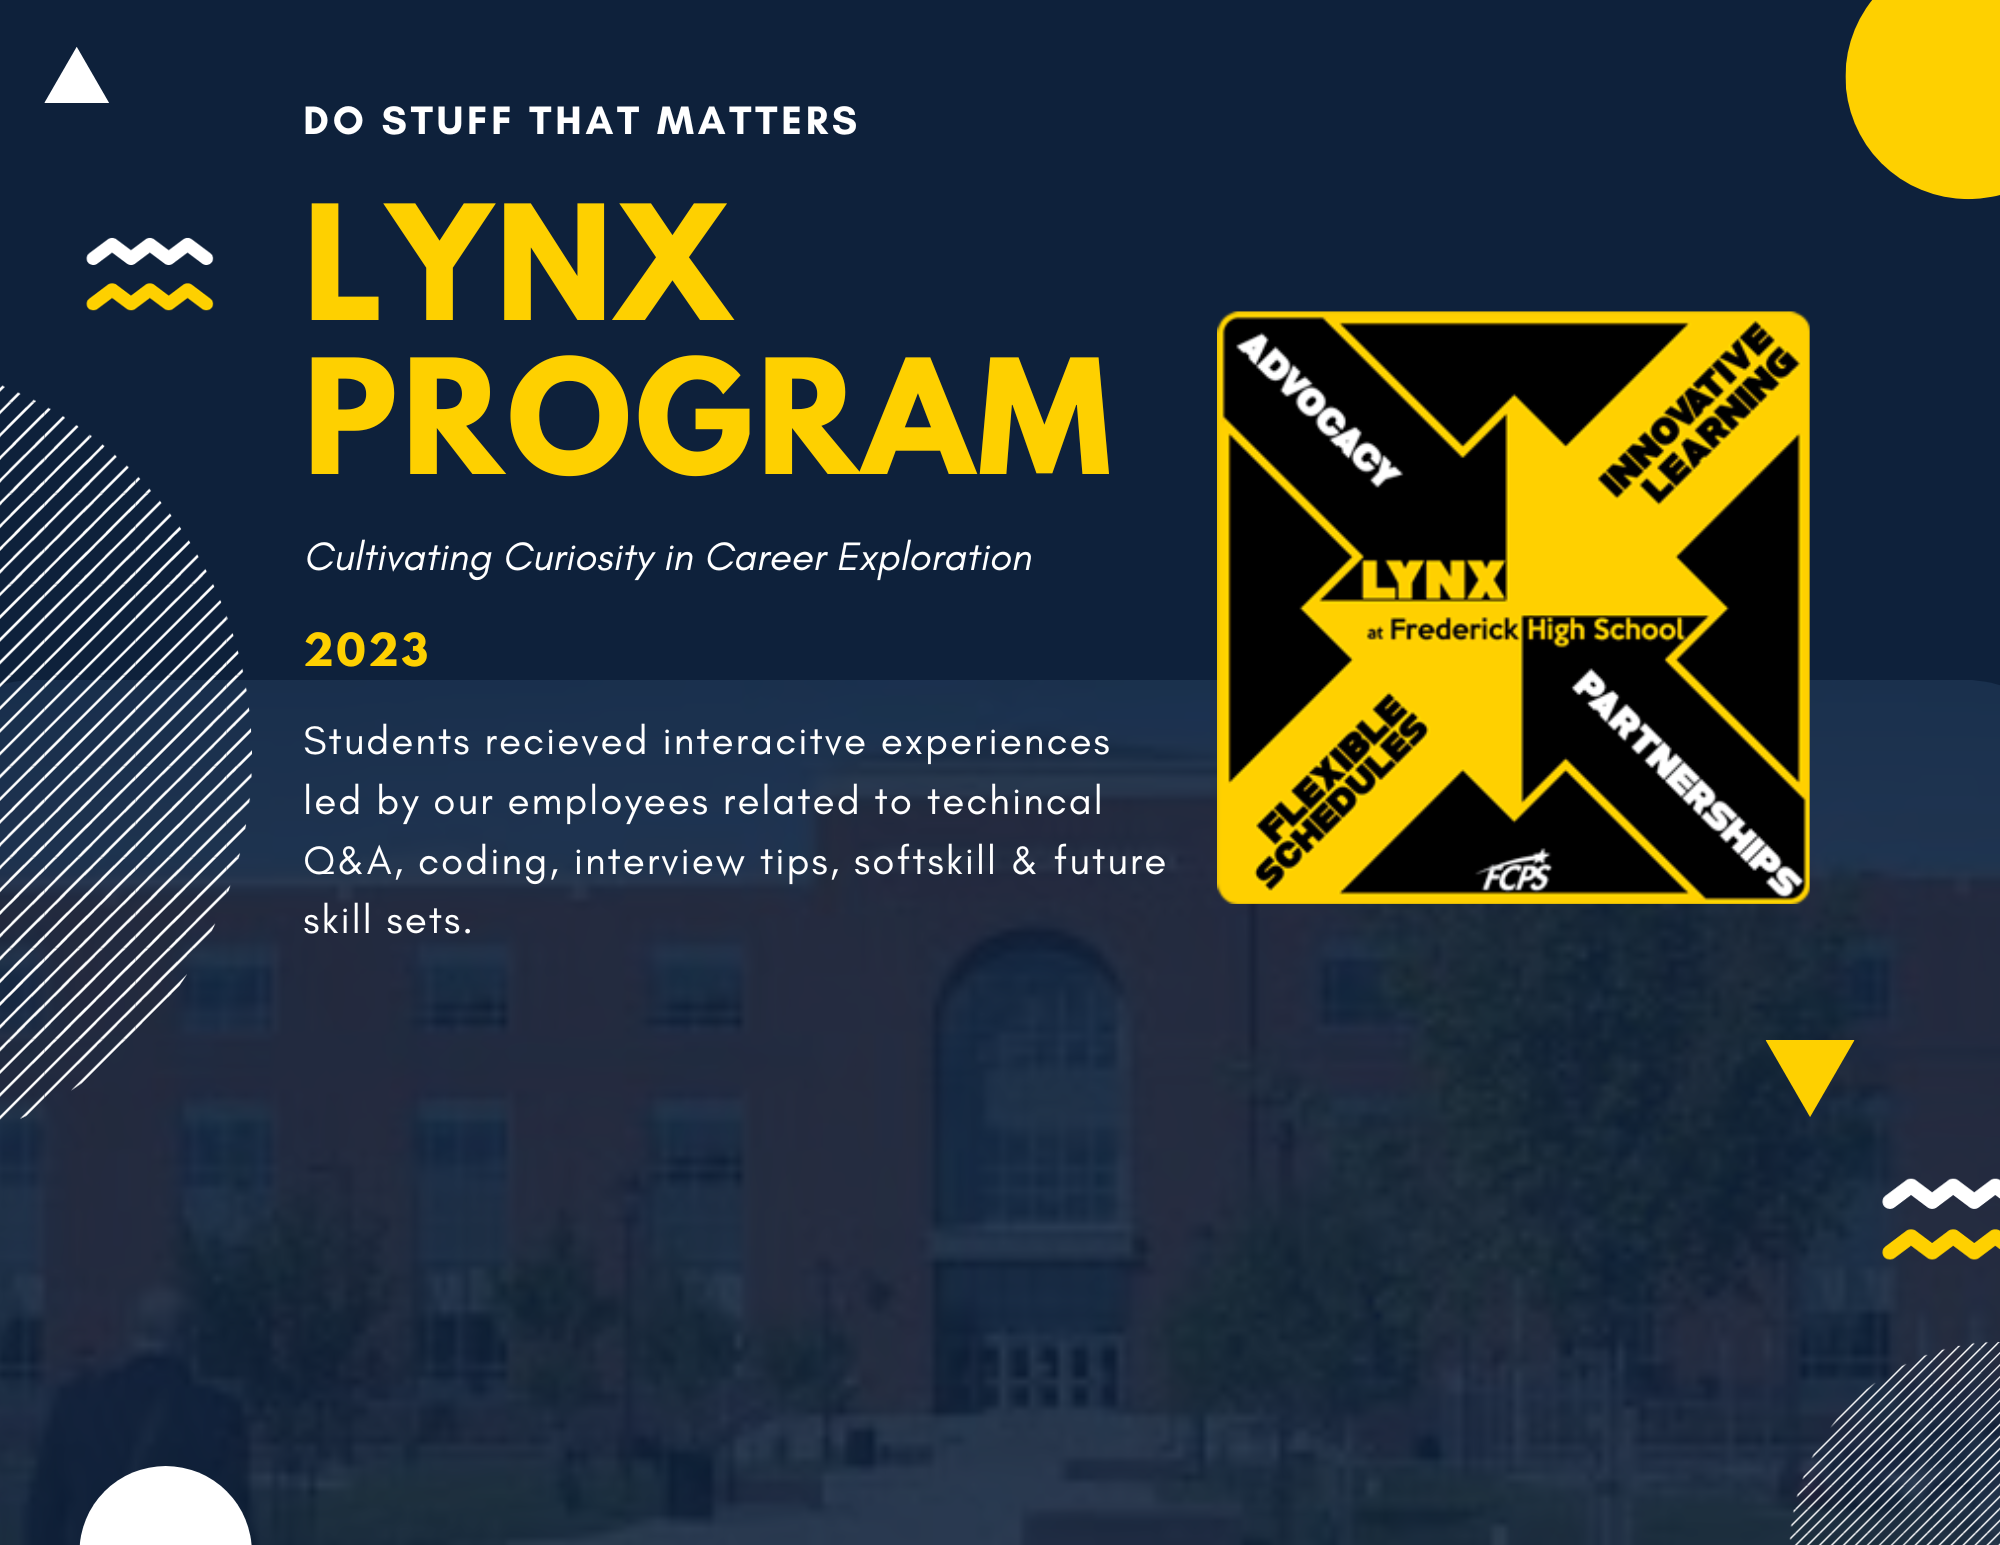 LYNX program flyer